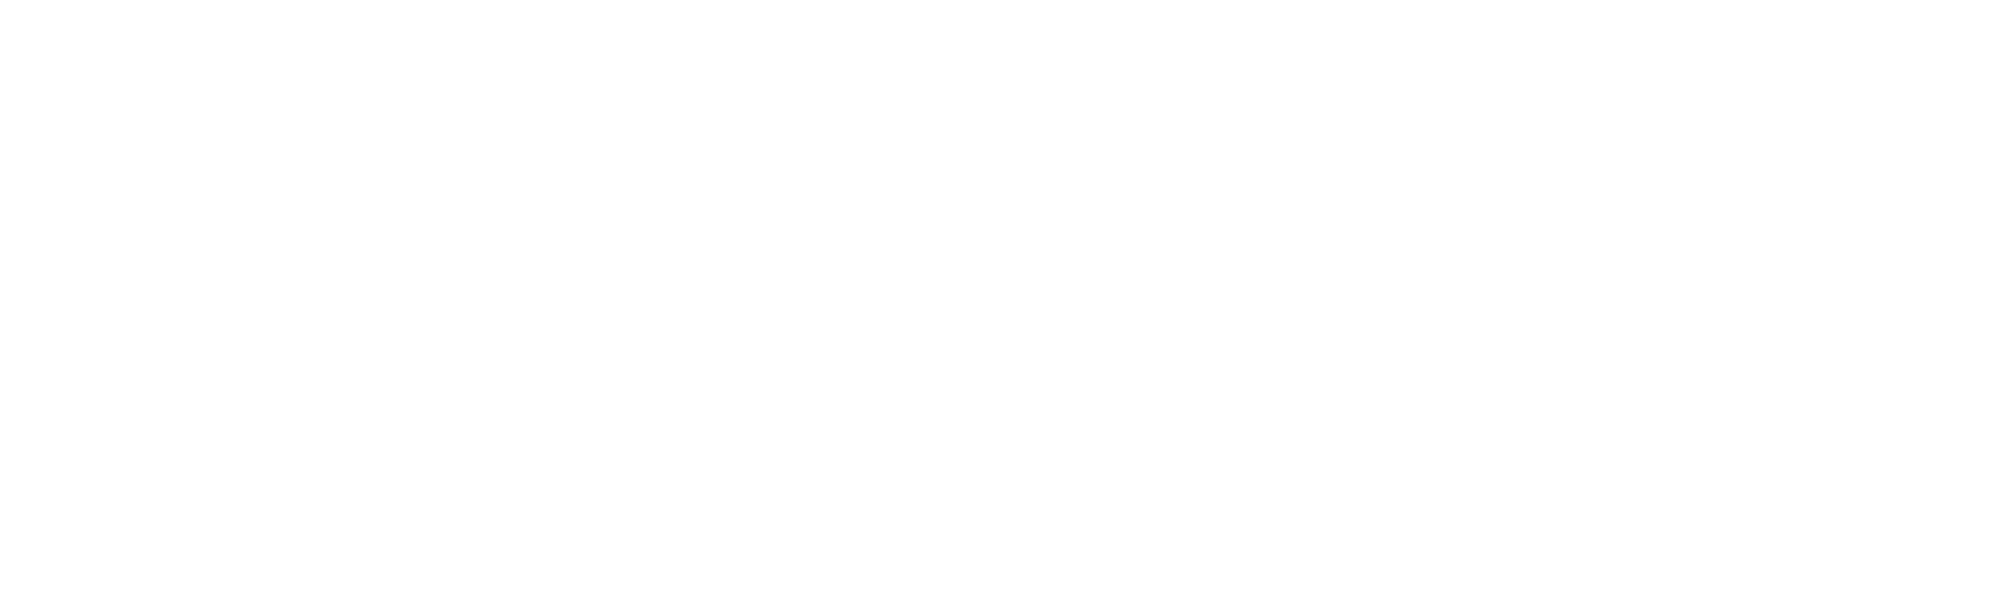 Evropska prestolnica kulture 2025 Nova Gorica - Gorica